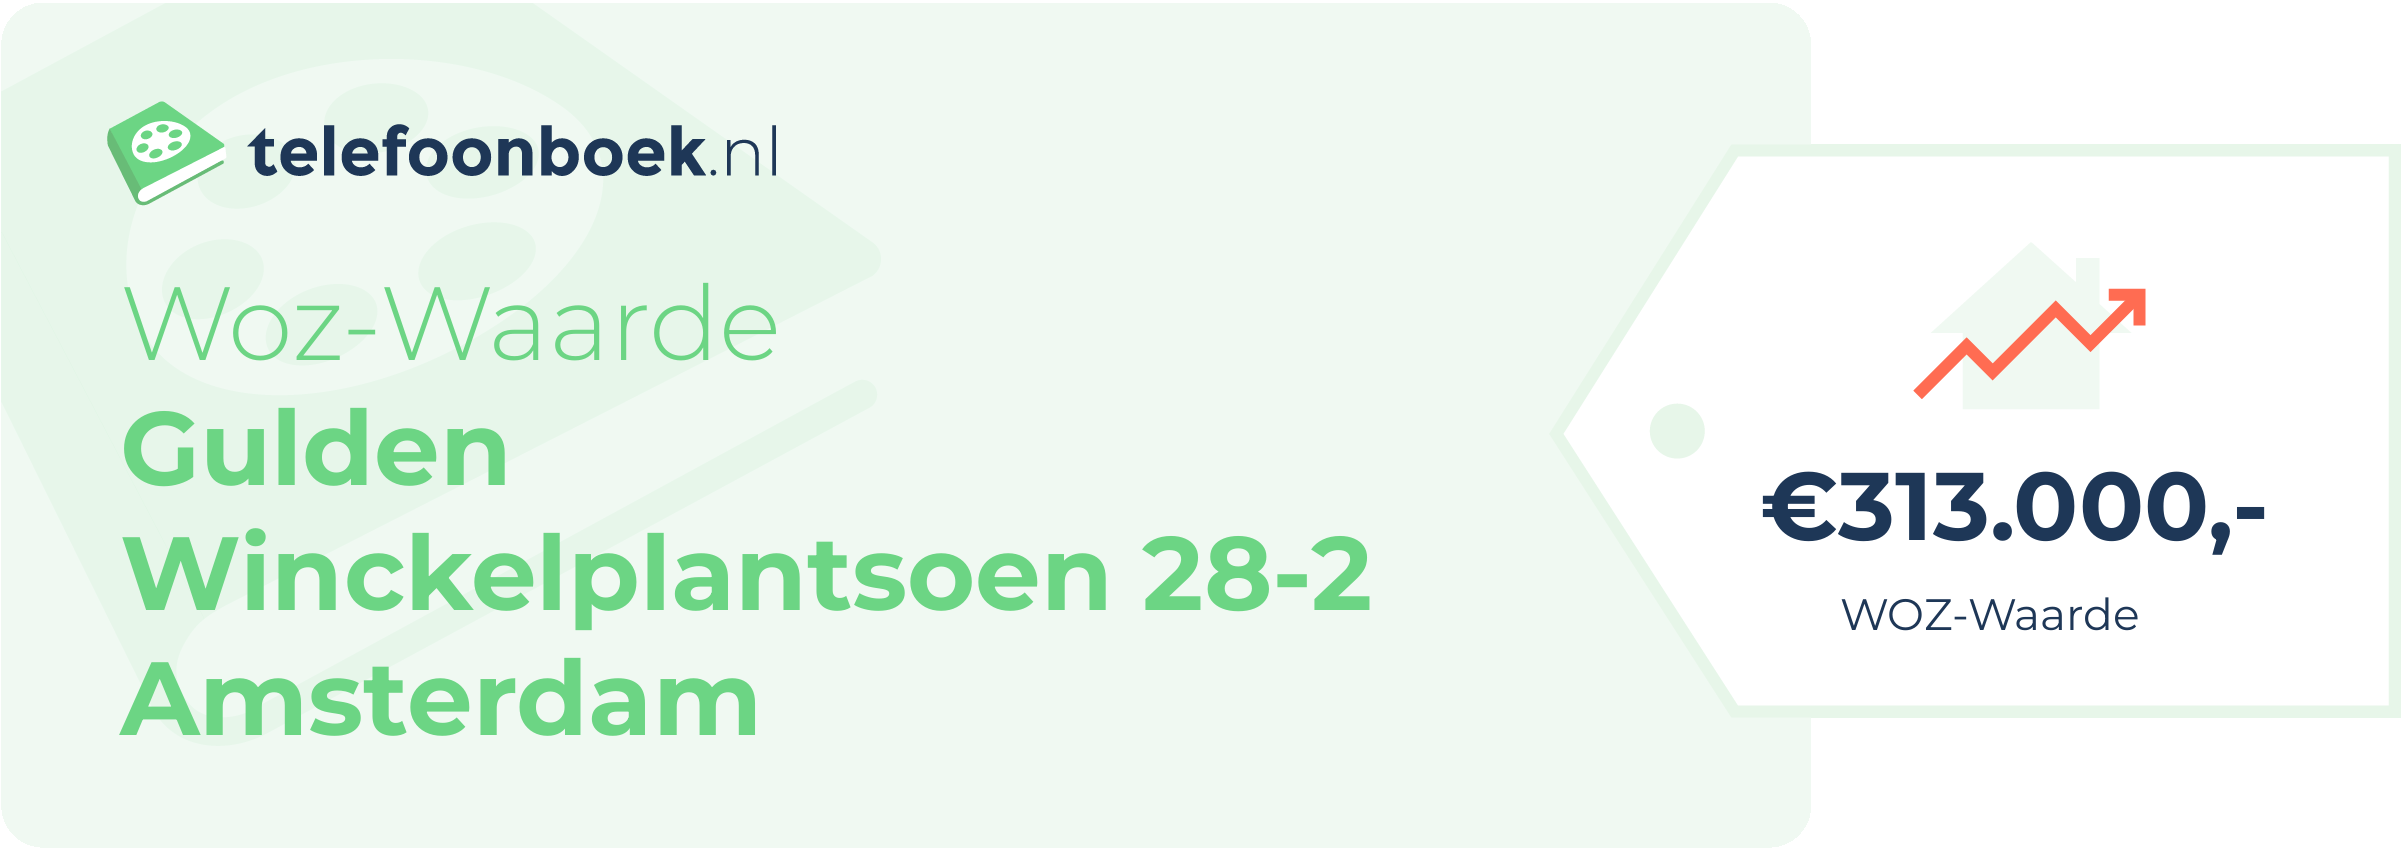 WOZ-waarde Gulden Winckelplantsoen 28-2 Amsterdam